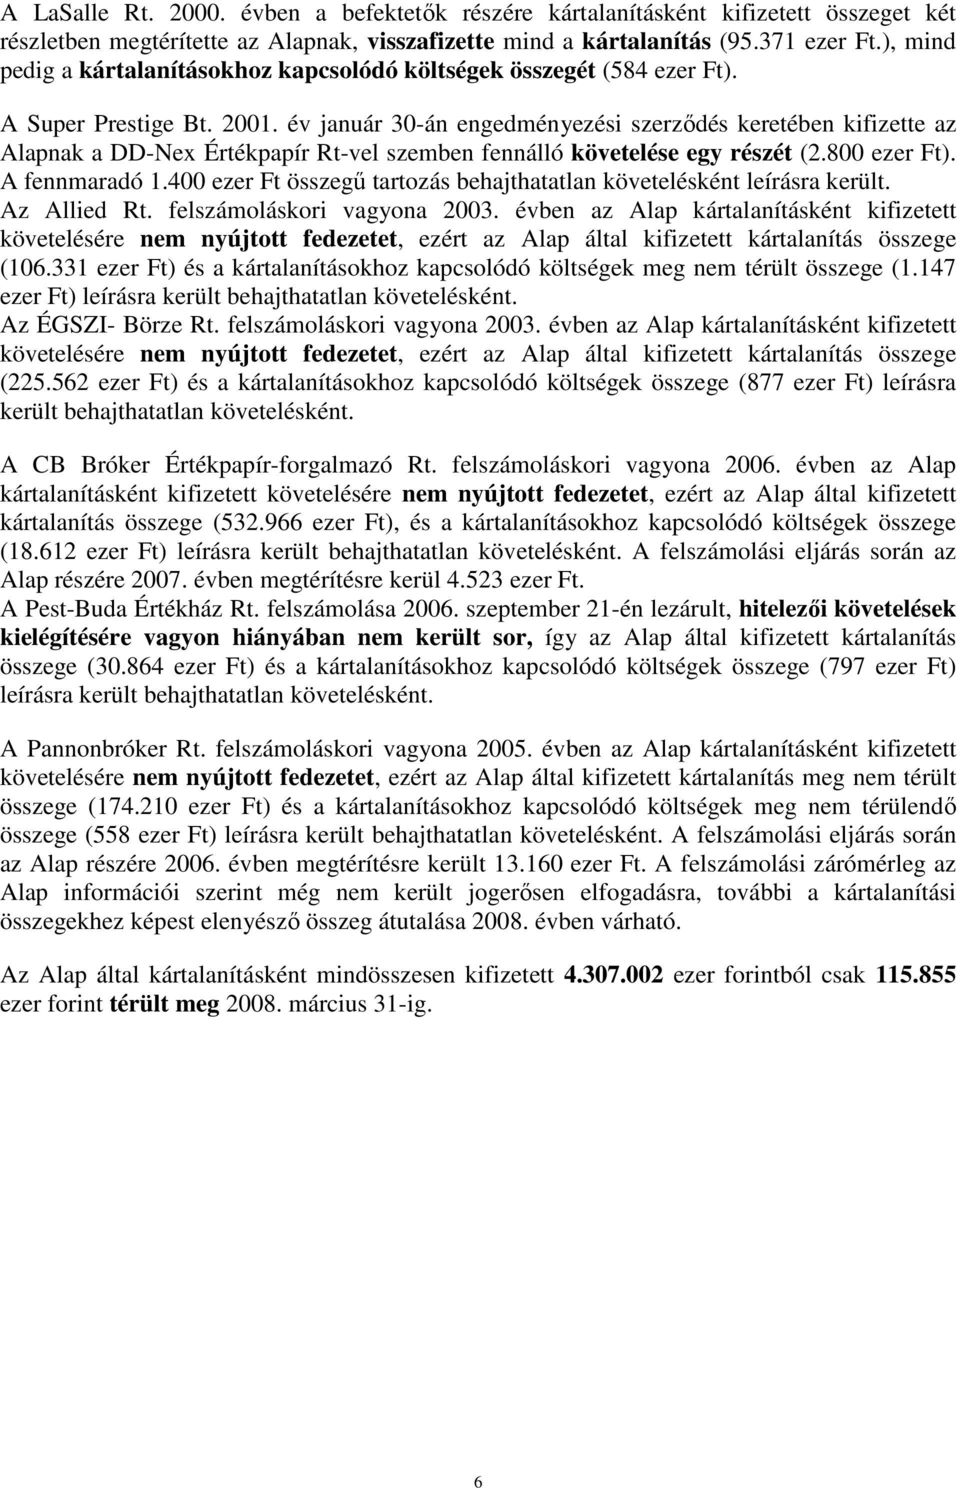 év január 30-án engedményezési szerzıdés keretében kifizette az Alapnak a DD-Nex Értékpapír Rt-vel szemben fennálló követelése egy részét (2.800 ezer Ft). A fennmaradó 1.